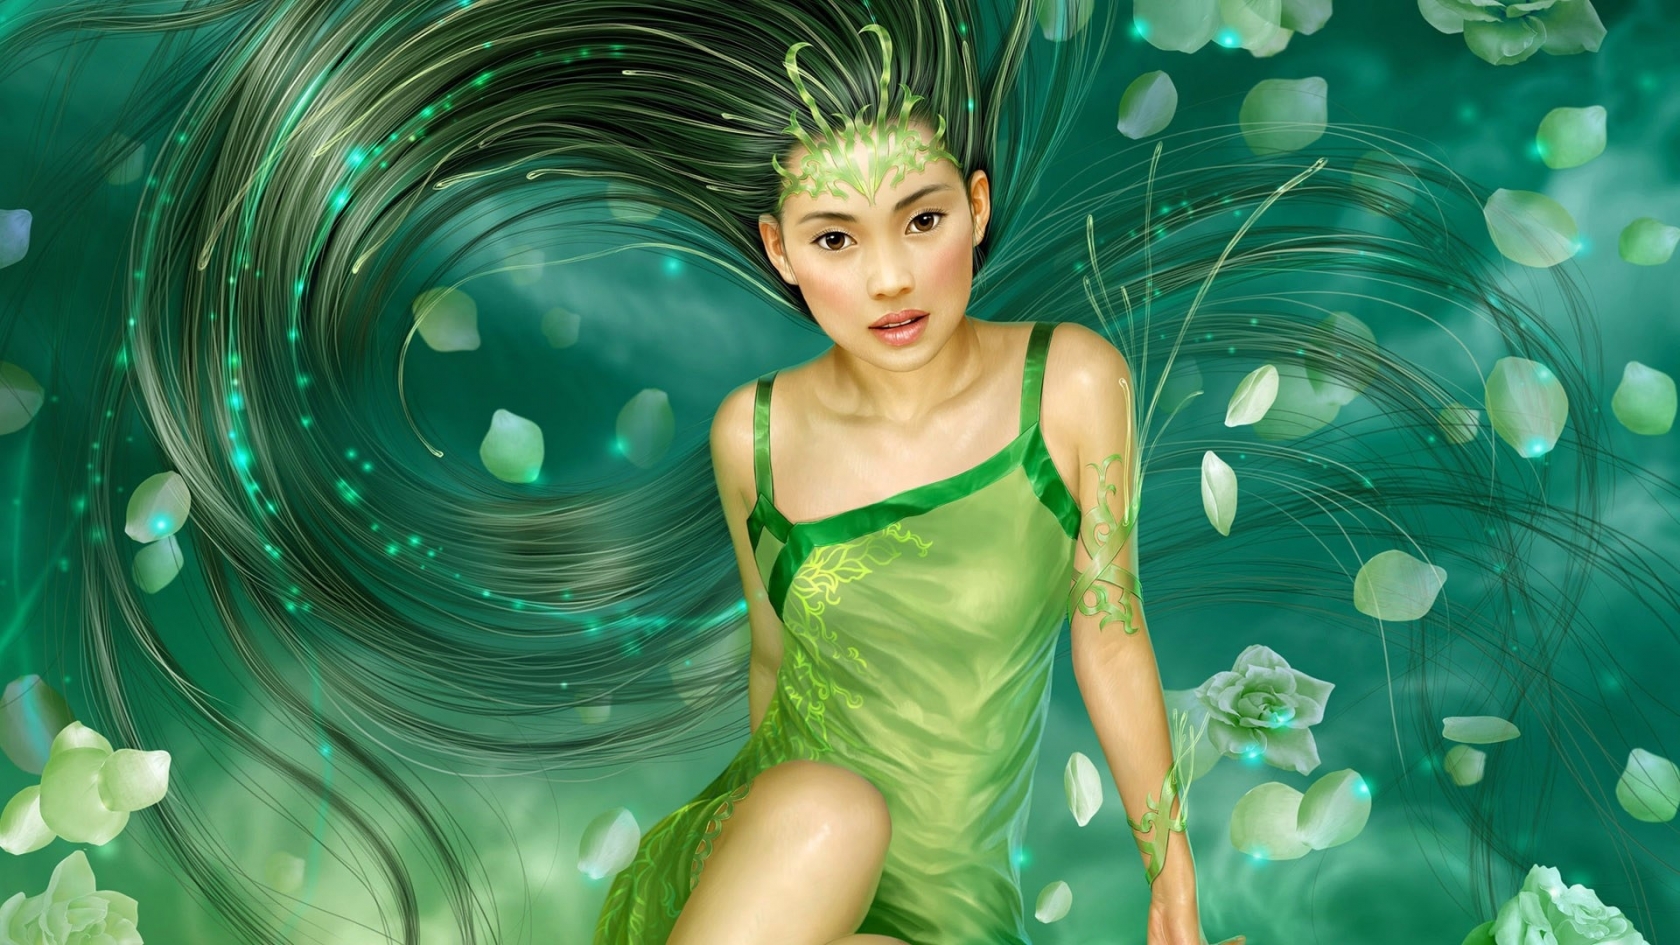 Fantasy Girl Green for 1680 x 945 HDTV resolution